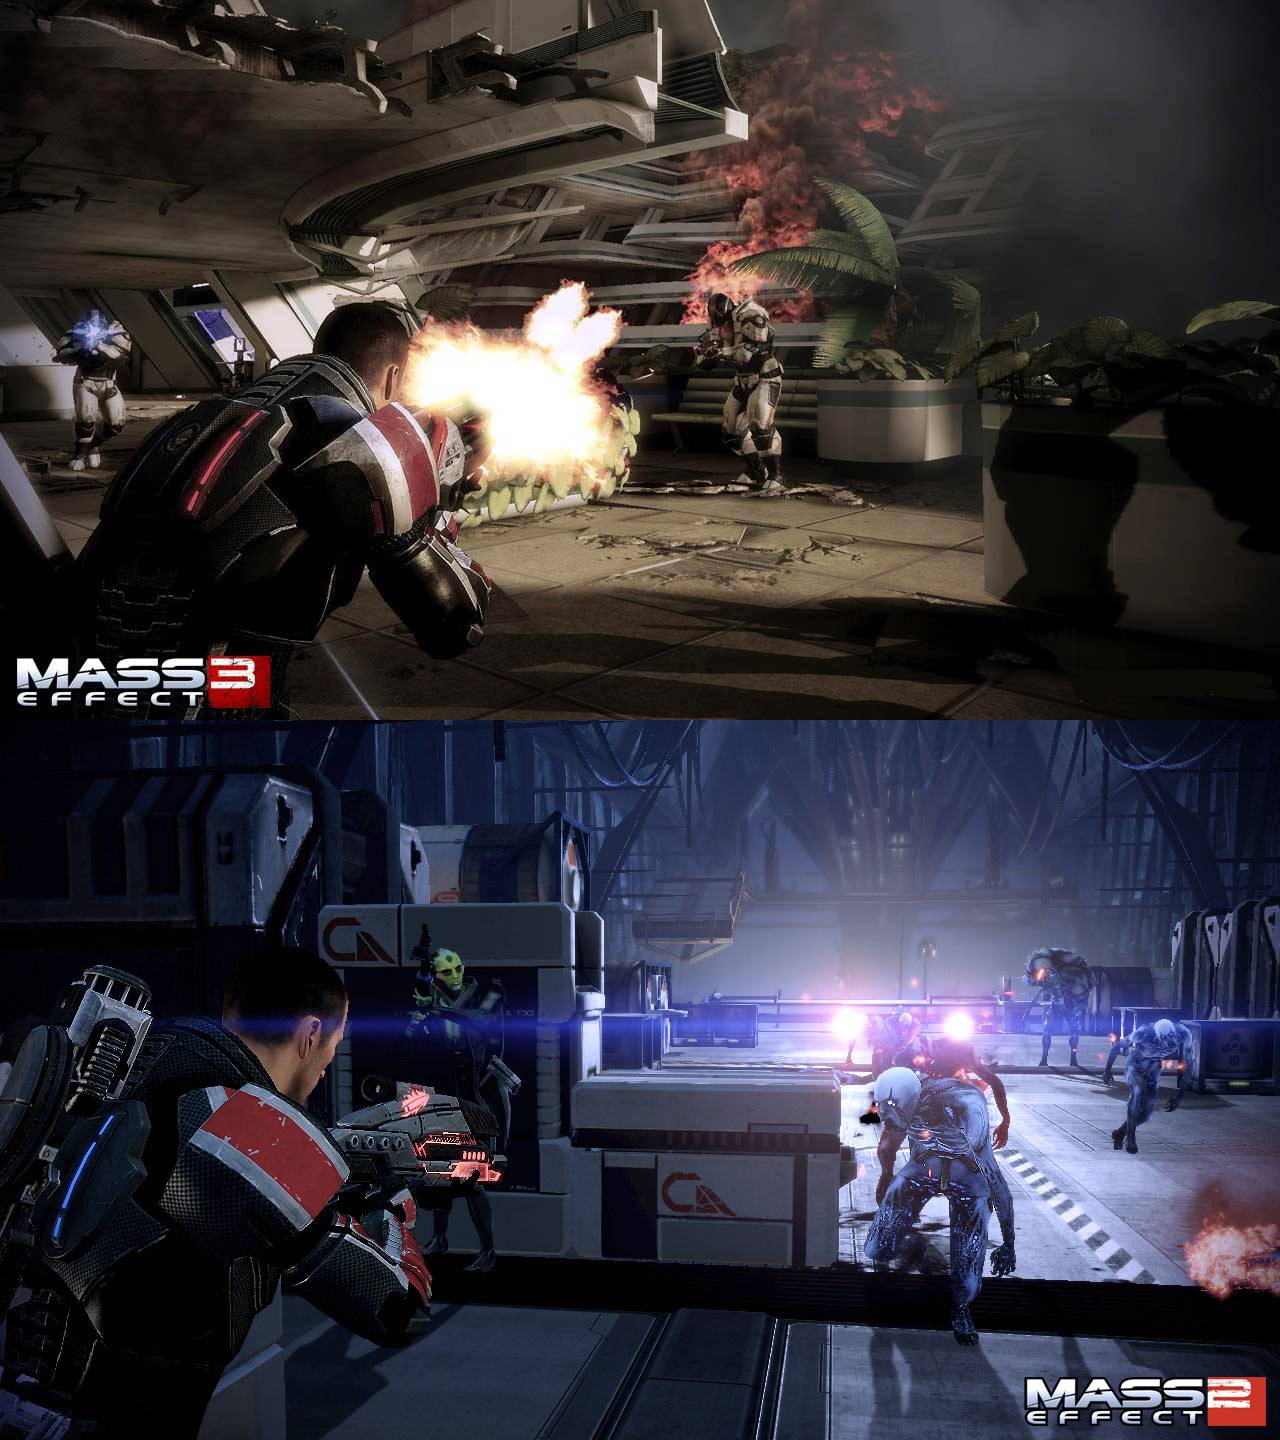 Mass Effect 3 vs Mass Effect 2: HD Screenshot Comparison